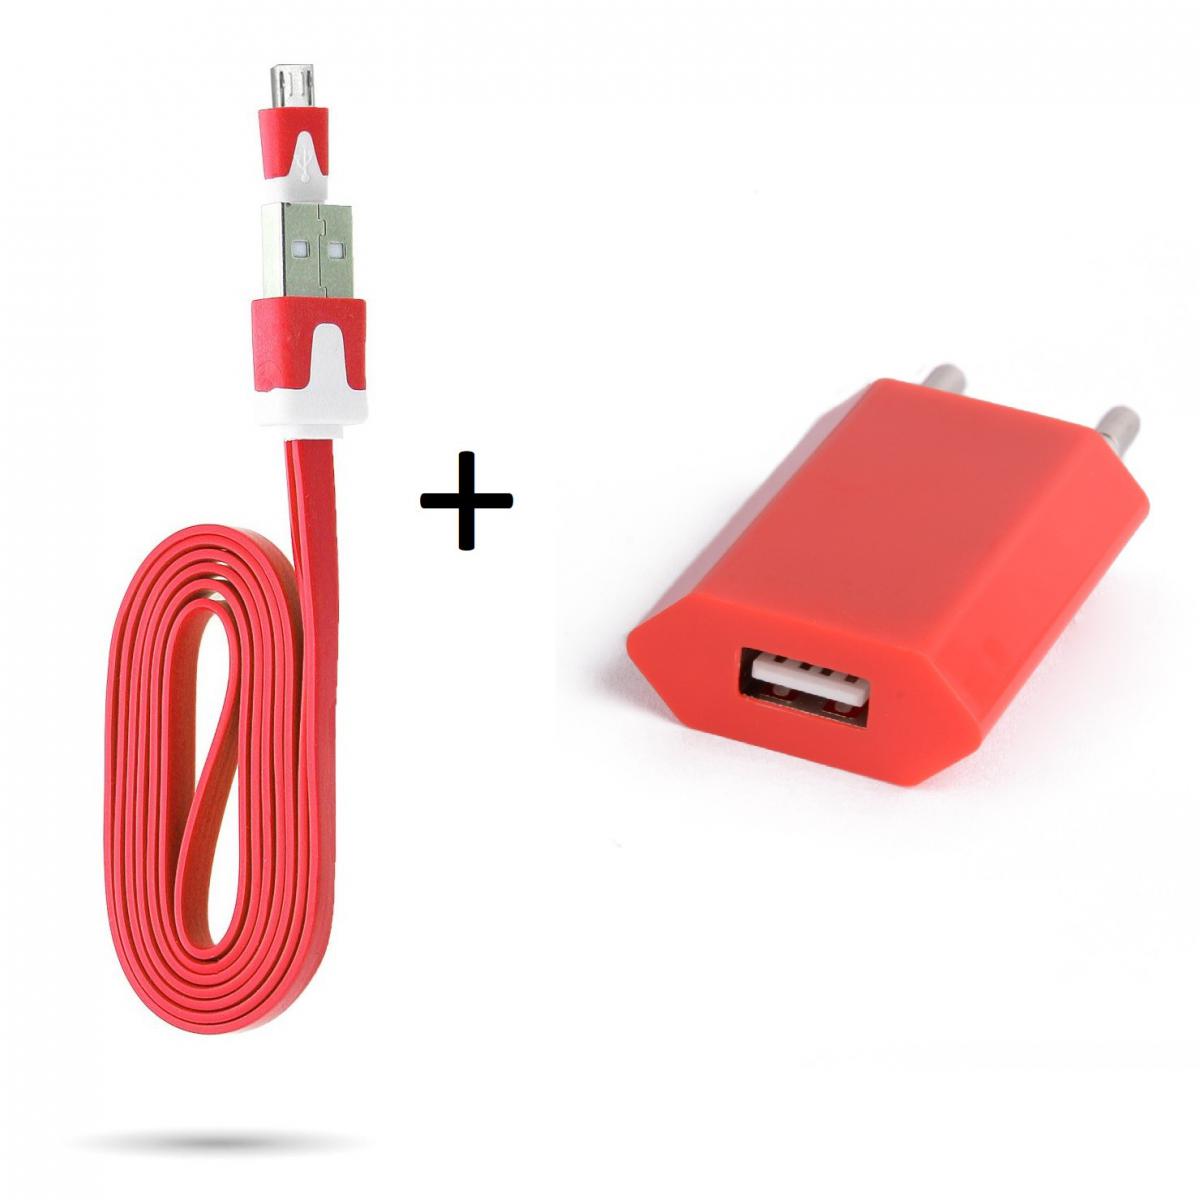 Shot - Cable Noodle 1m Chargeur + Prise Secteur pour ALCATEL 1 2019 Smartphone Micro USB Murale Pack Android (ROUGE) - Chargeur secteur téléphone